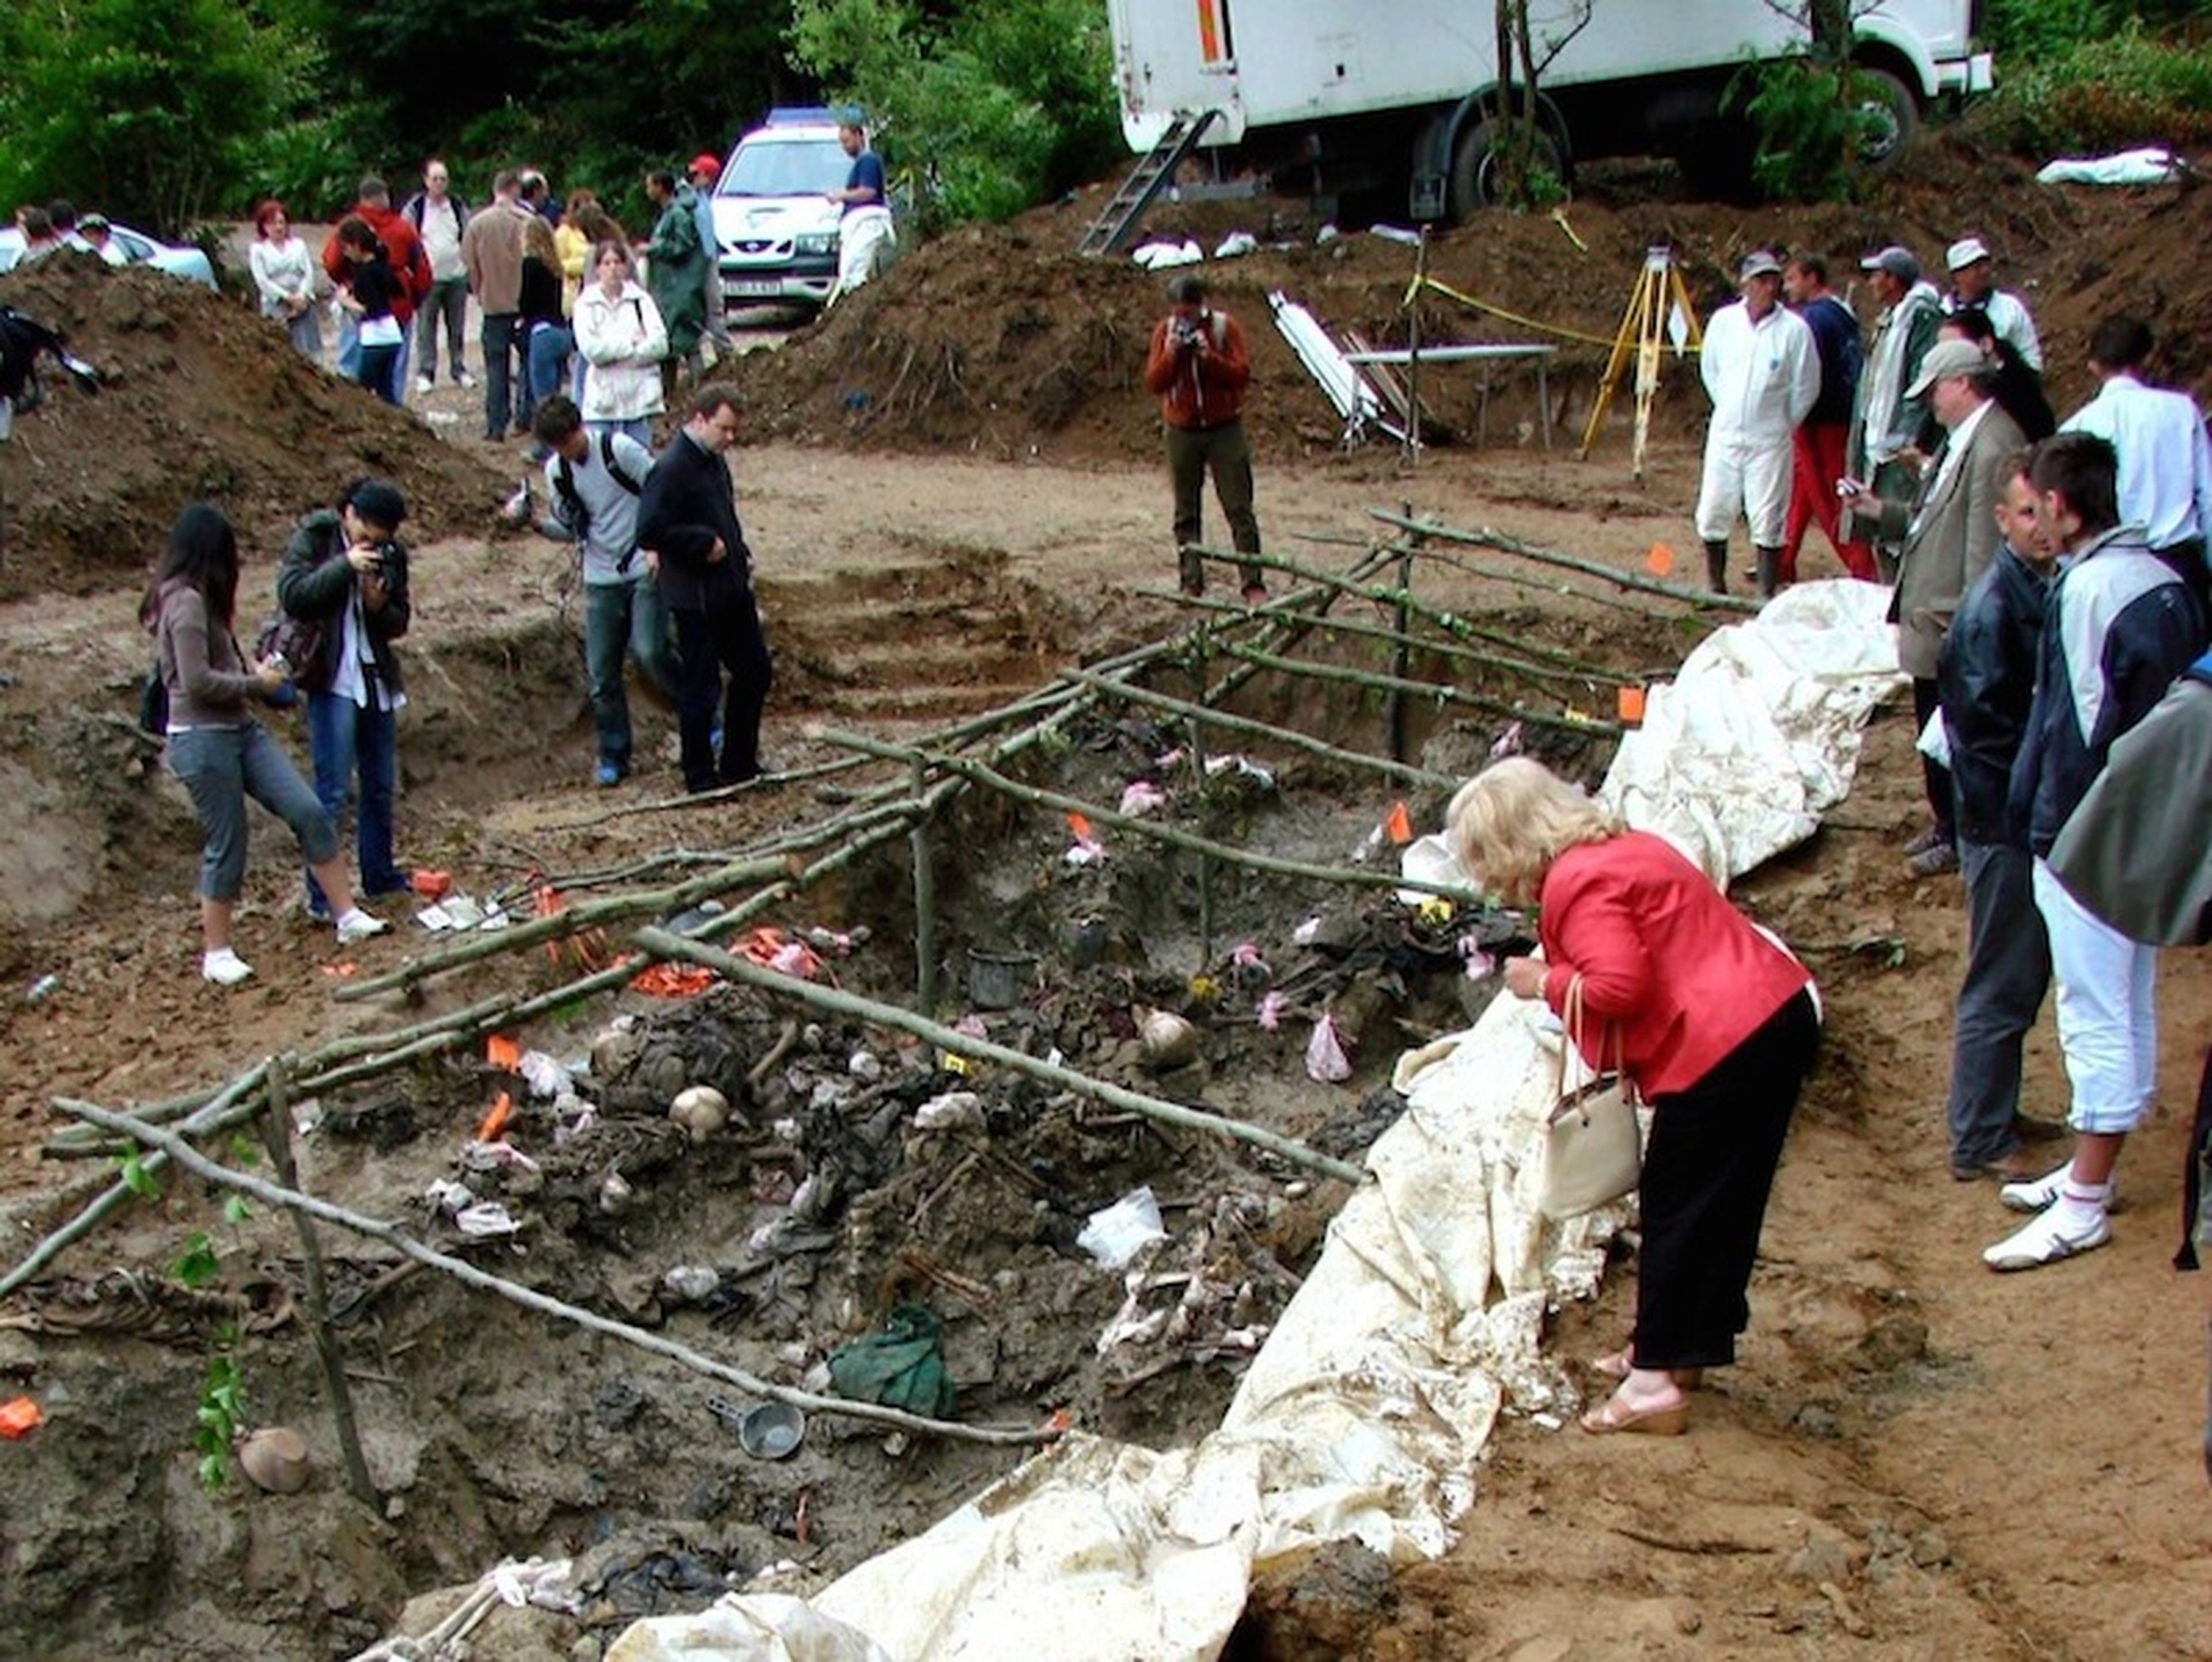 Delegados de la IAGS examinan una fosa común de víctimas de la masacre de Srebrenica, a las afueras de la localidad de Potocari (Bosnia Herzegovina) en julio de 2007.